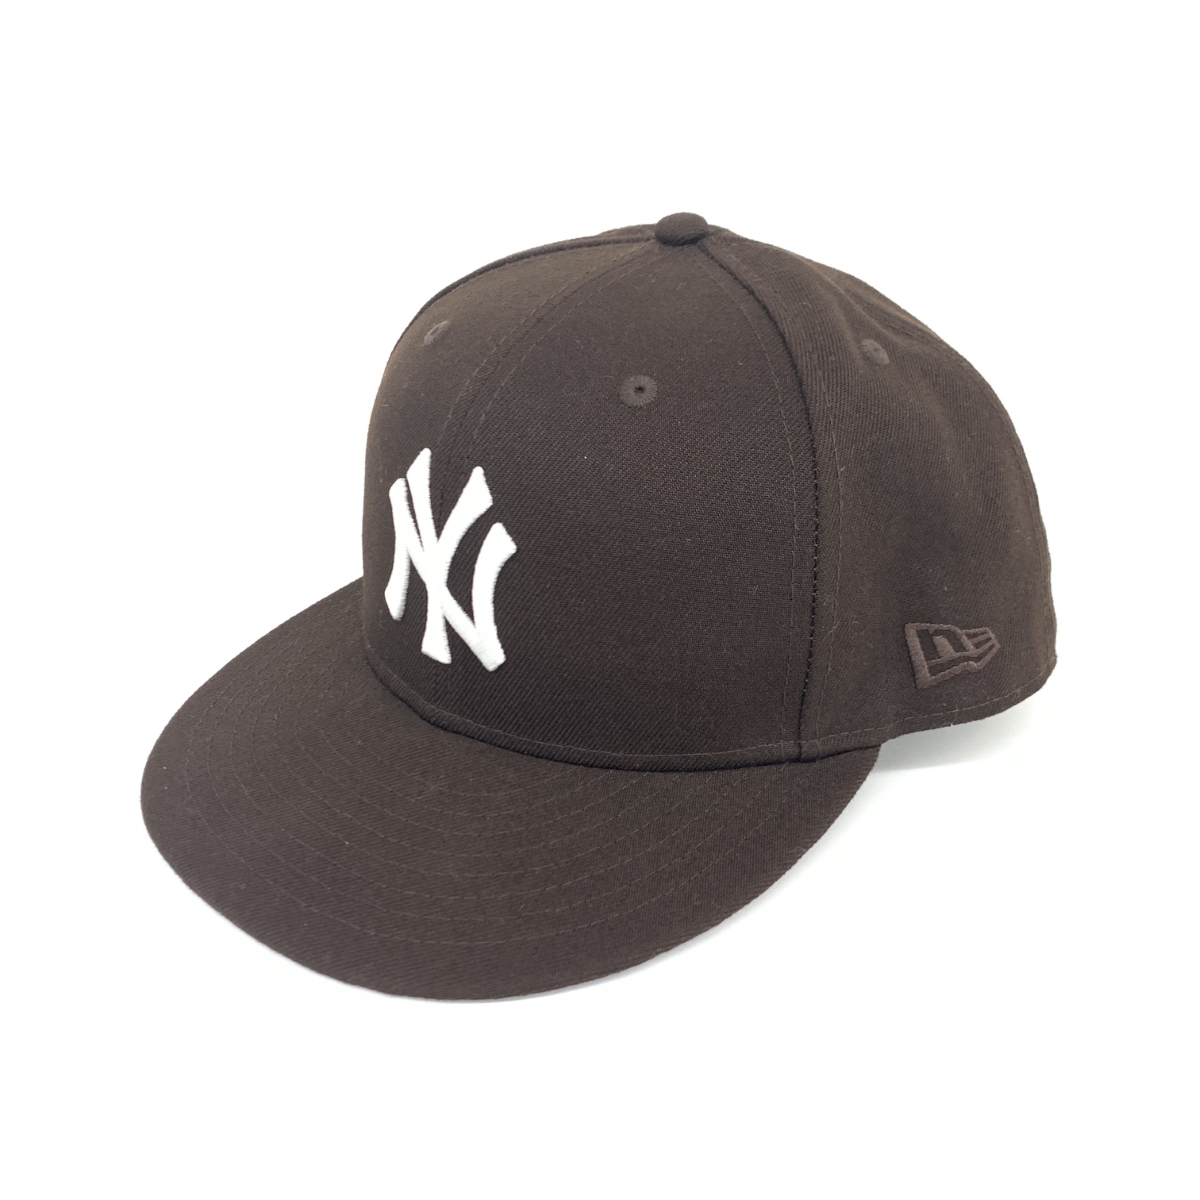 良好◆NEW ERA ニューエラ×ヤンキース 75thワールドシリーズ キャップ ◆ ブラウン 59fifty メンズ 帽子 ハット hat 服飾小物_画像1